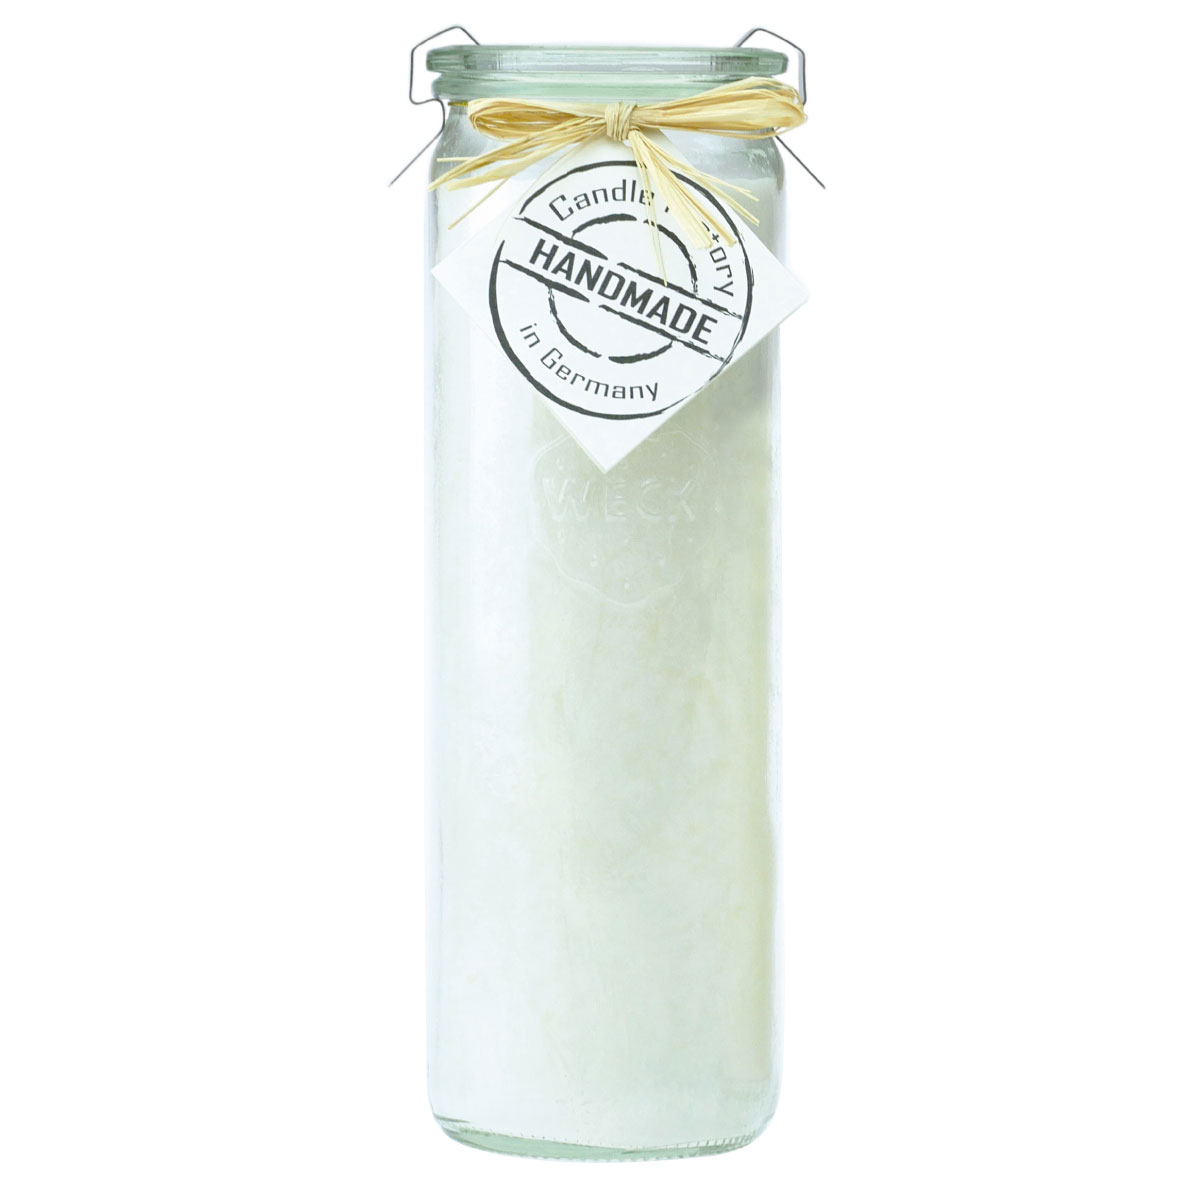 Weiß Duftlos - Big Jumbo Windlicht im Weckglas von Candle Factory